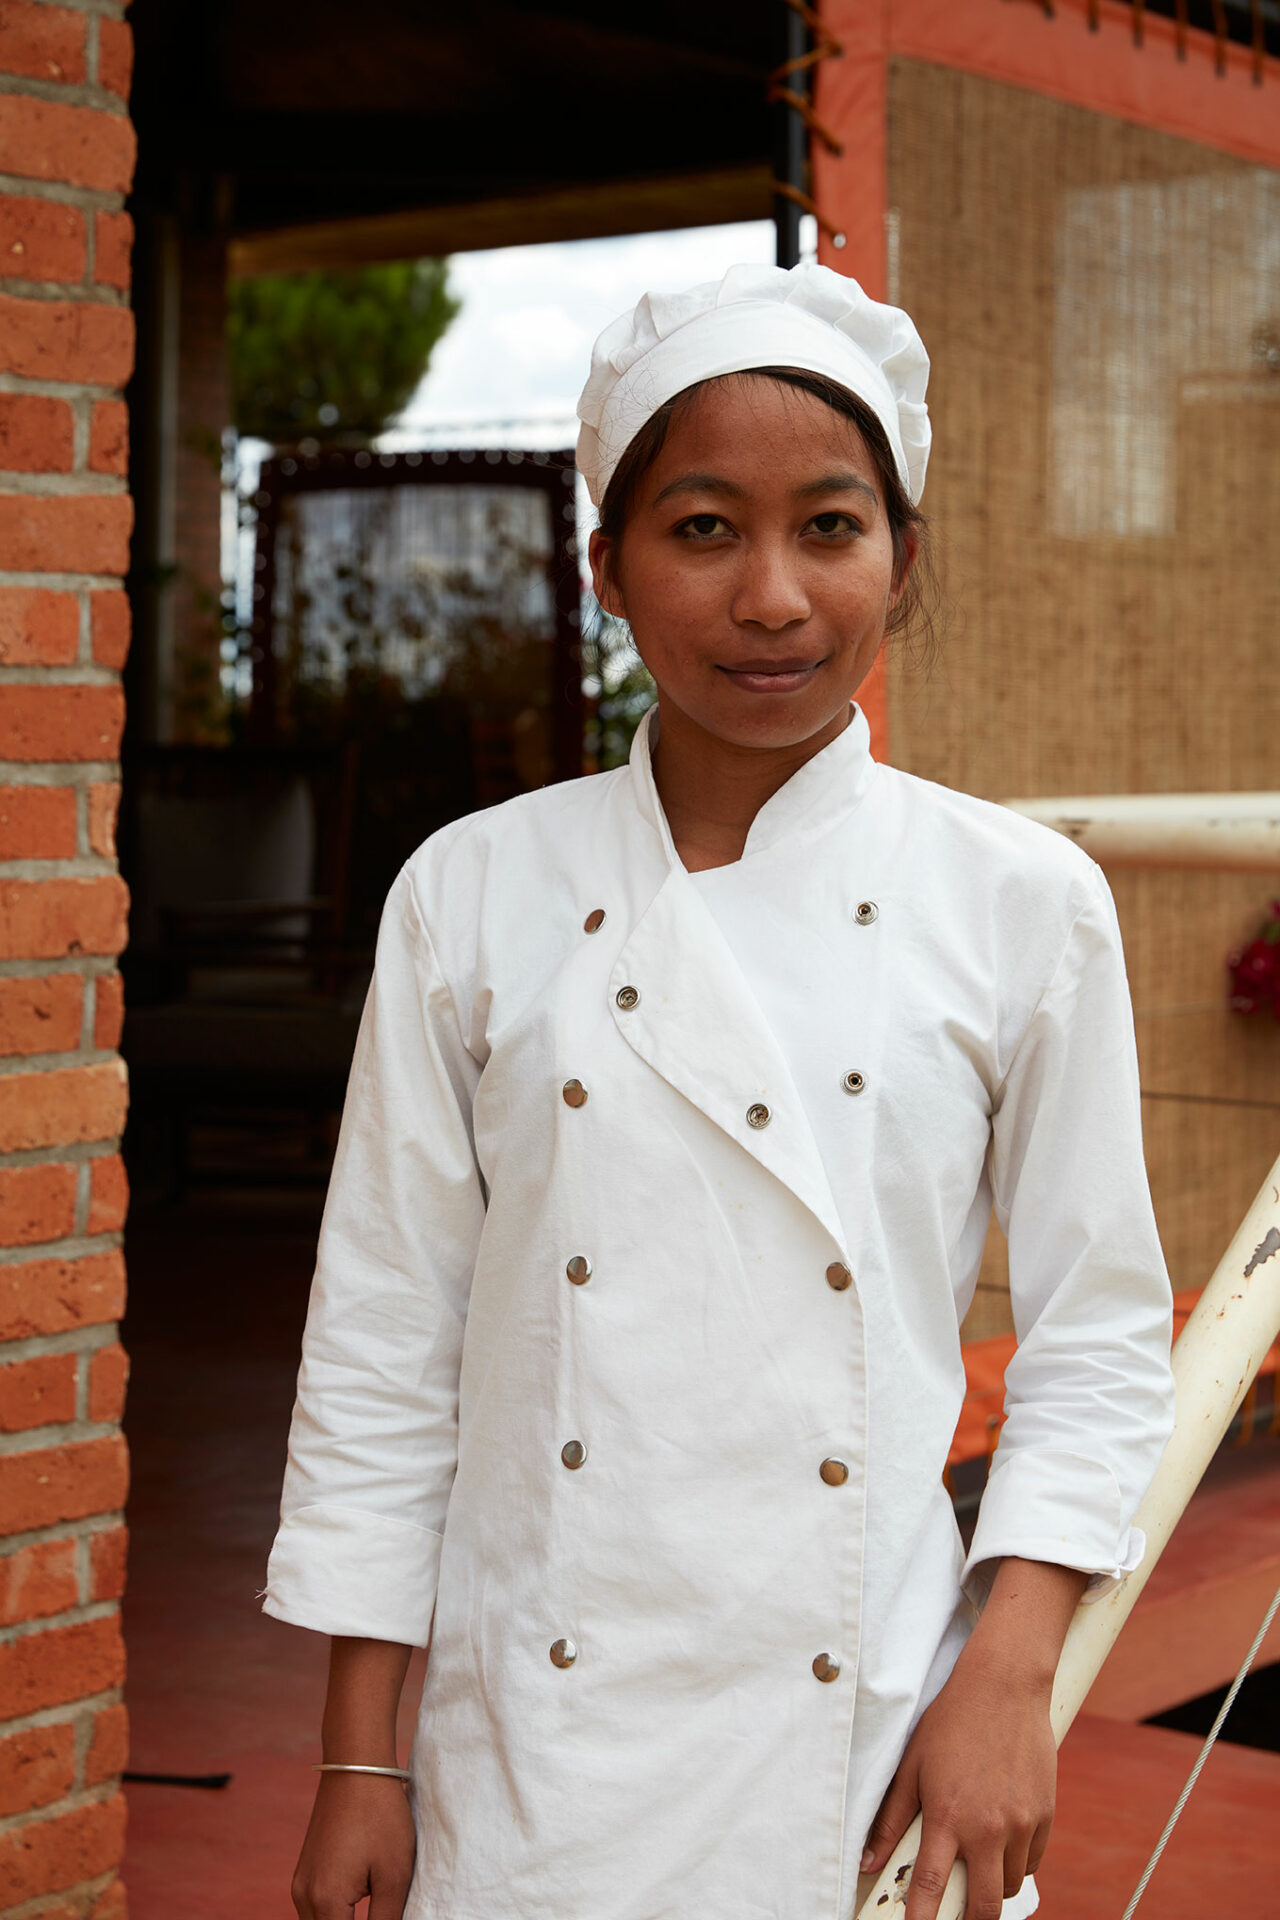 Eine junge madagassische Studentin steht in Kochbekleidung am Geländer einer Außentreppe und lächelt in die Kamera